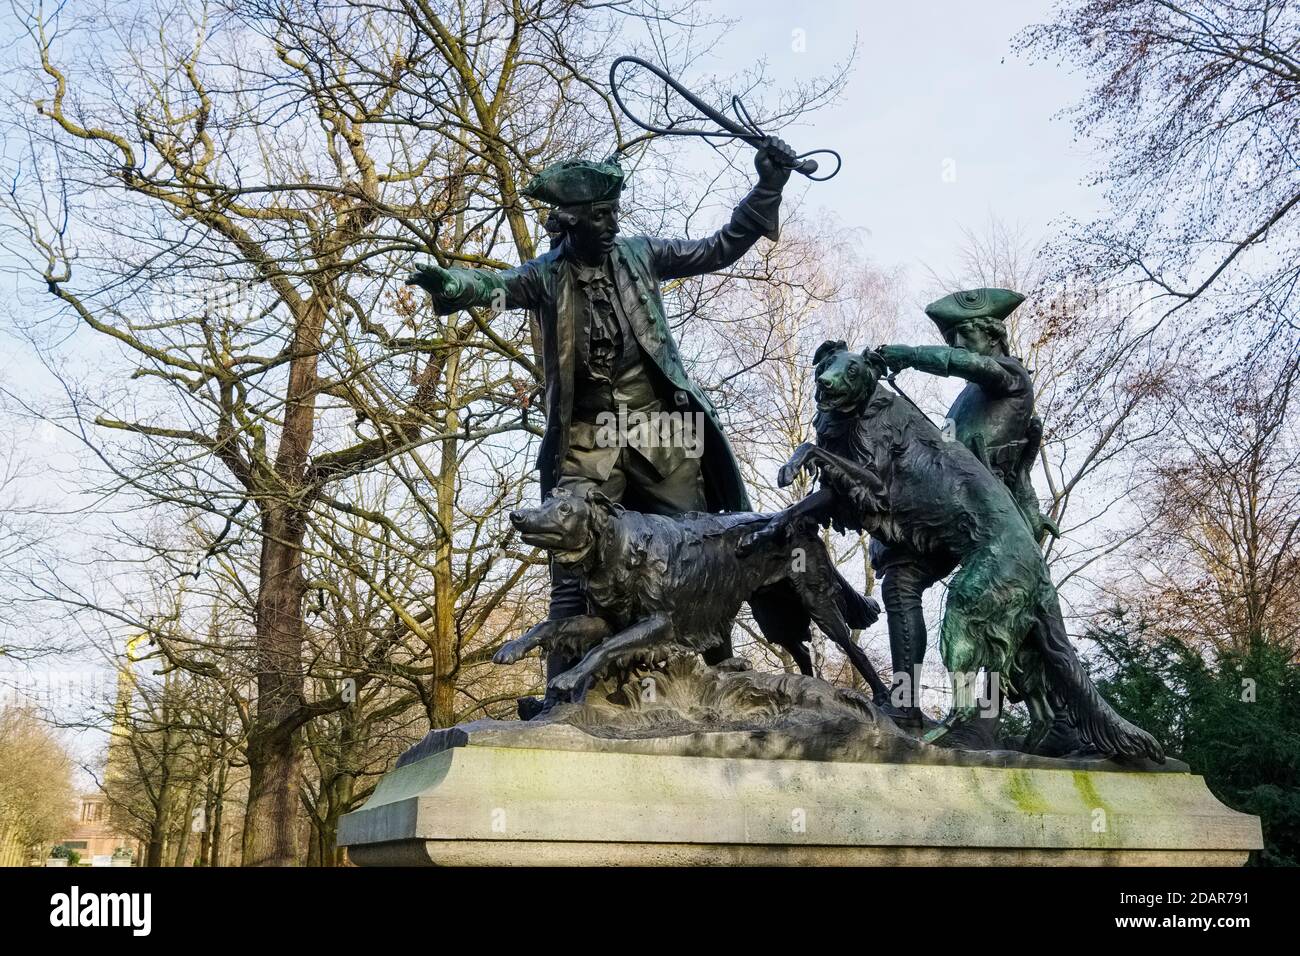 Hare Coursing, Sculpture, Grosser Tiergarten, Berlin, Germany Stock Photo